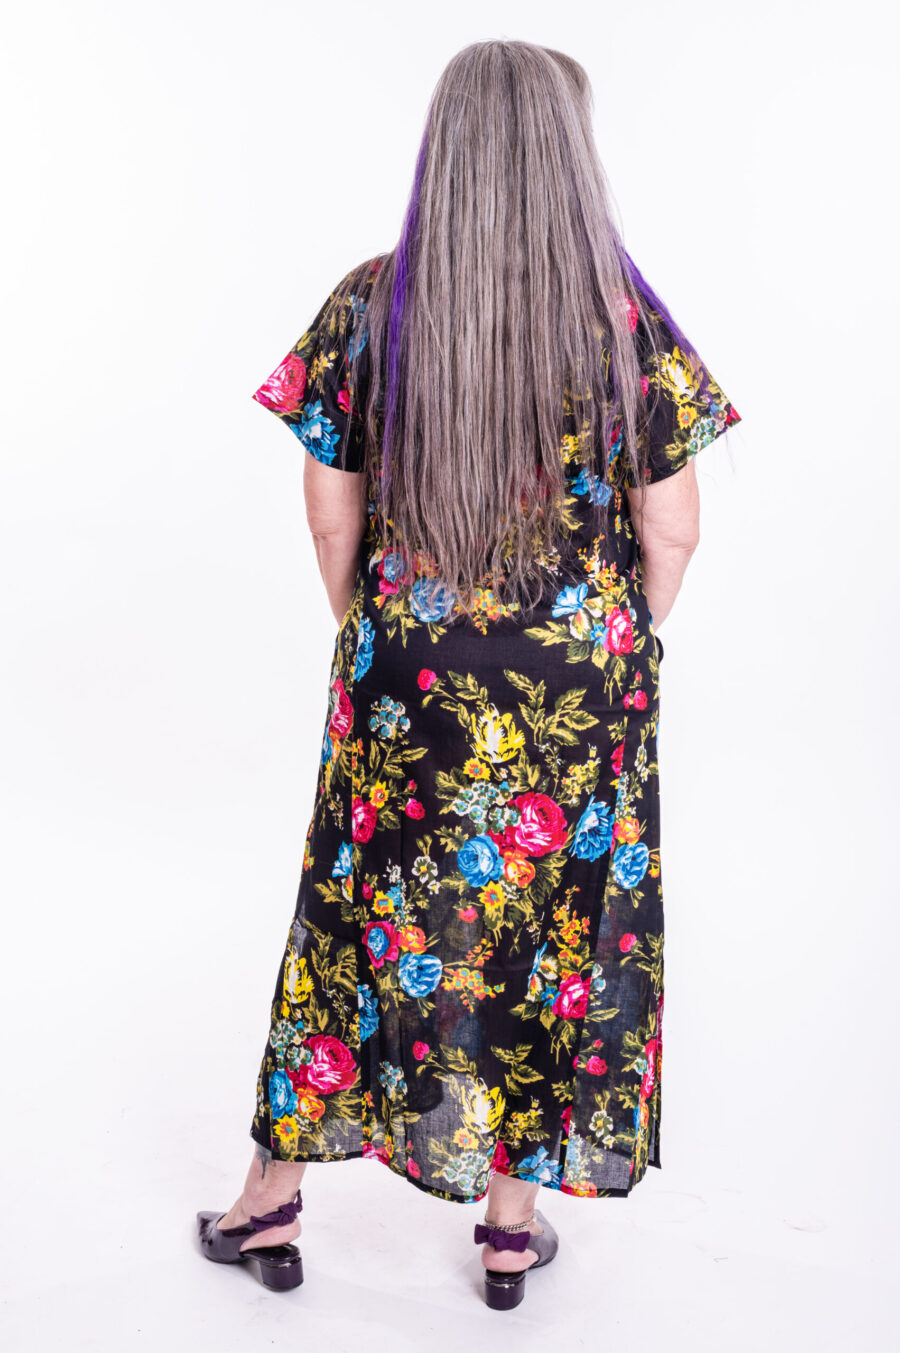 גלביה לנשים | גלבייה בעיצוב ייחודי - שמלה שחורה עם הדפס פרחים צבעוני